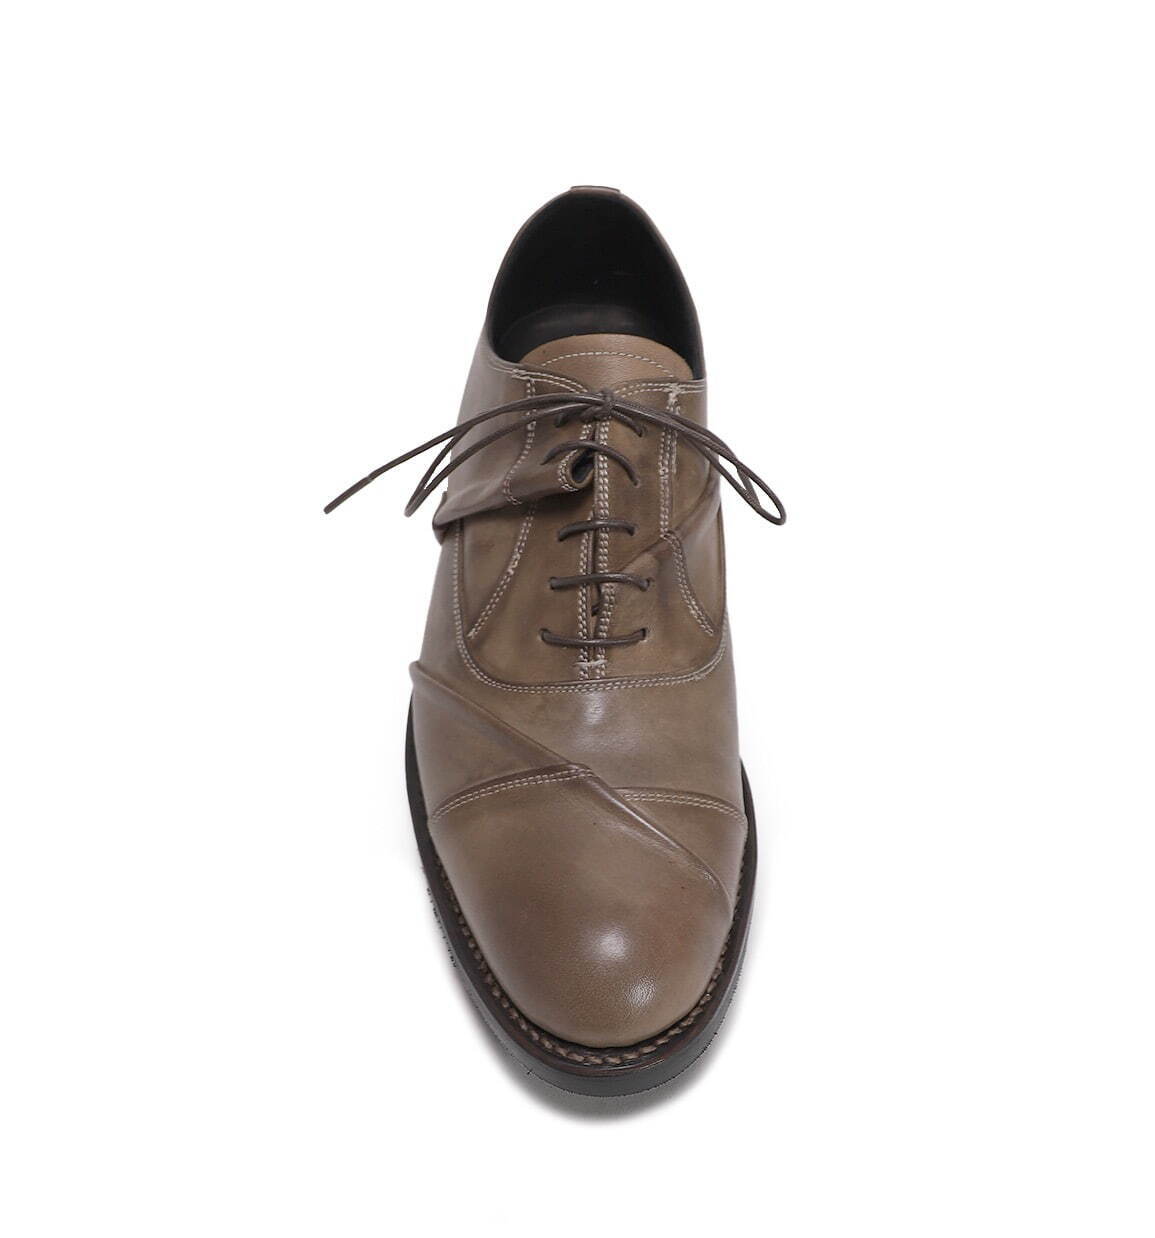 アトリエ ミハラヤスヒロのオーダーメイド革靴、シワを施すことでパーツの“ずれ”を表現｜写真6